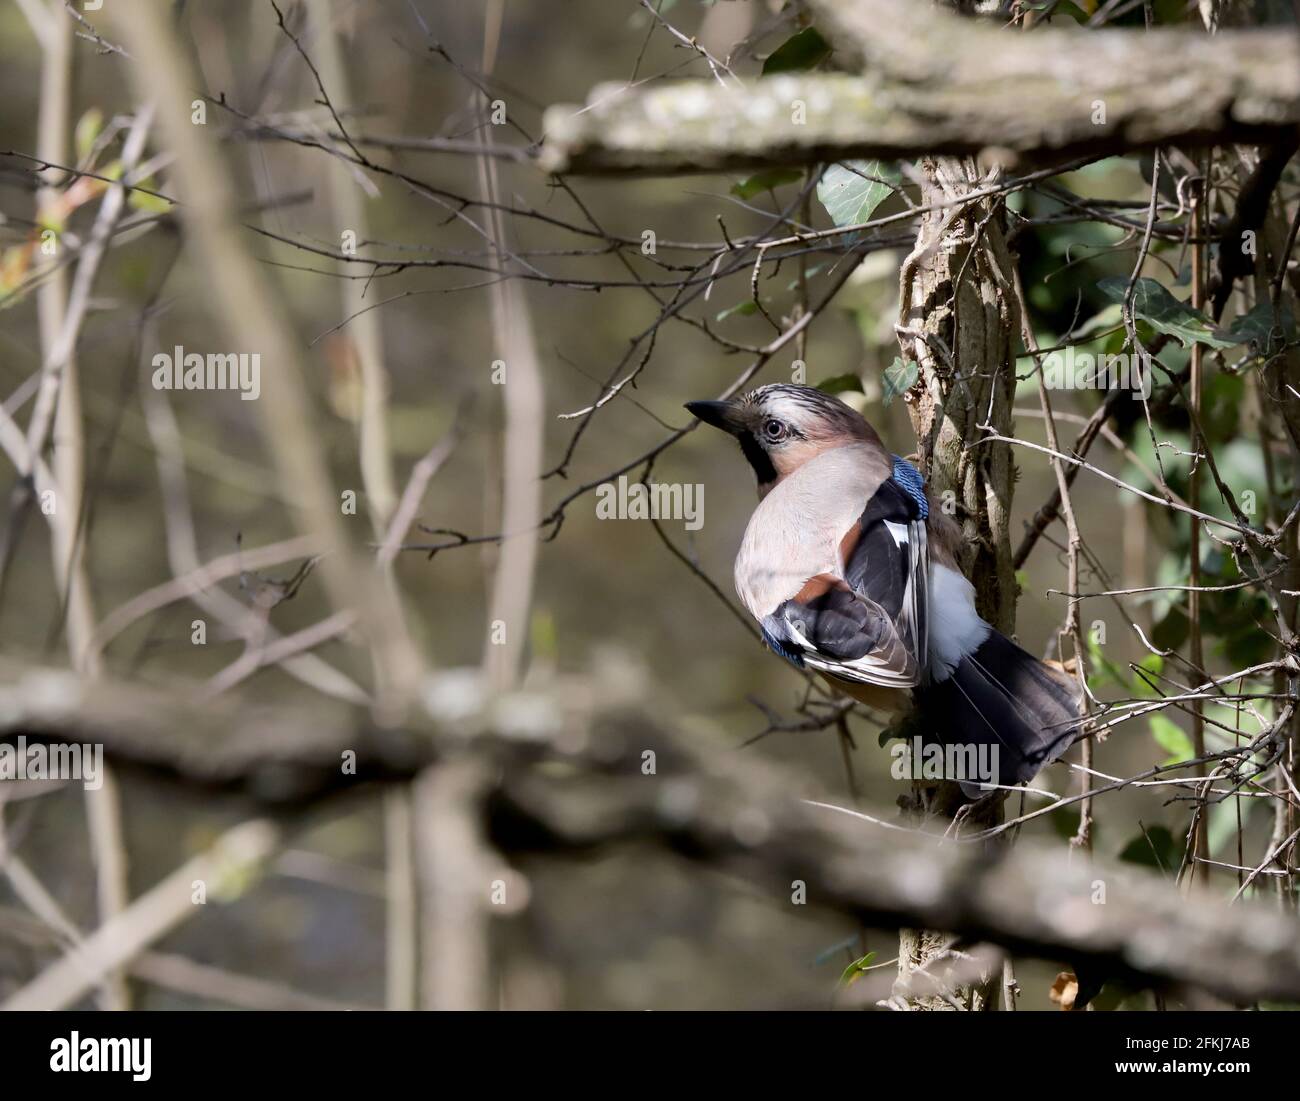 Eurasischer eichelhäher (Garrulus glandarius) oder Eichelhäher-Vogel auf einem Ast, Corvidae Stockfoto